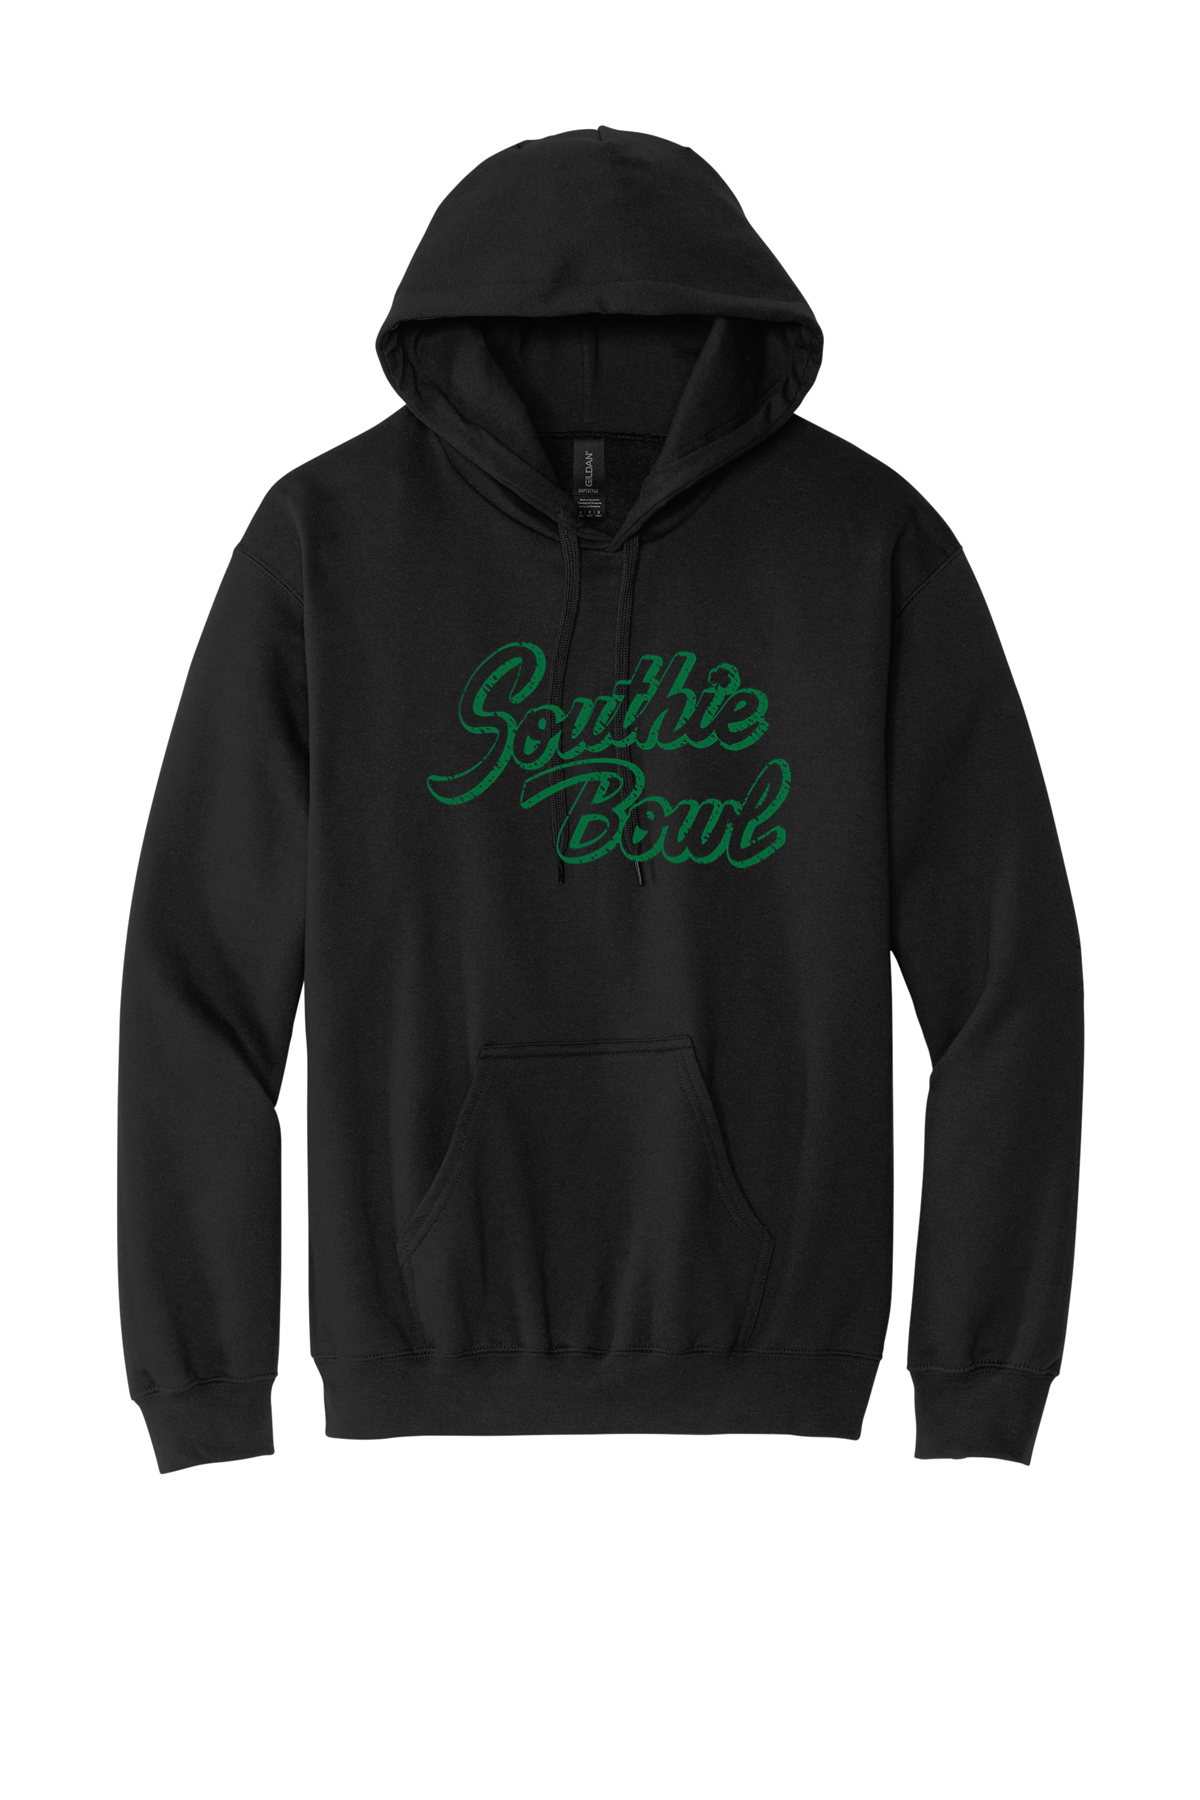 Southie Bowl Clover Sweatshirt